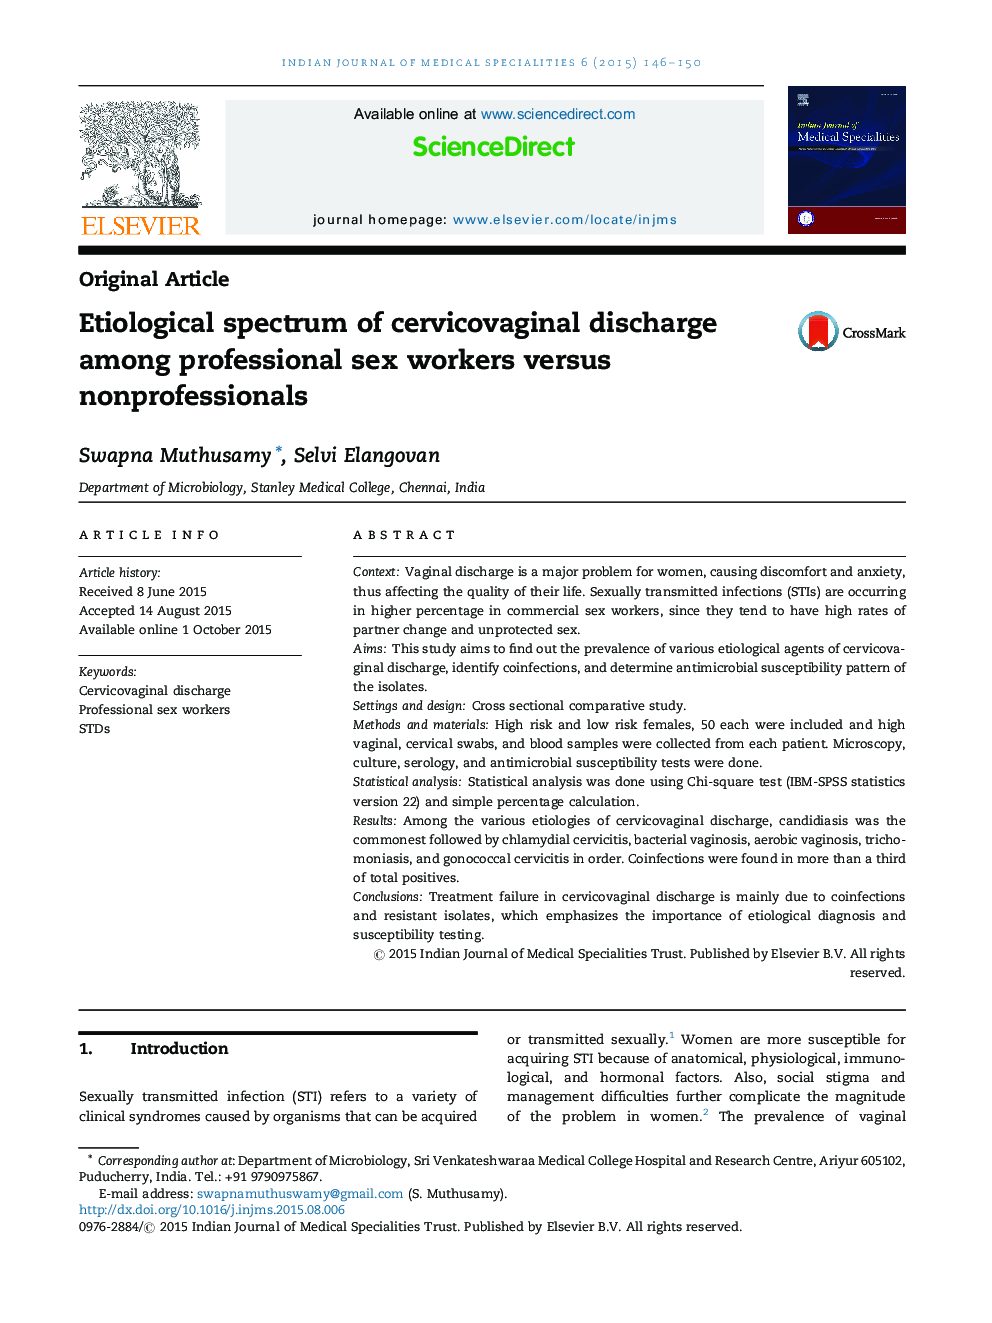 طیف علمی تخلیه سرویکوواژینال در میان کارکنان حرفه ای جنسی و غیر حرفه ای 